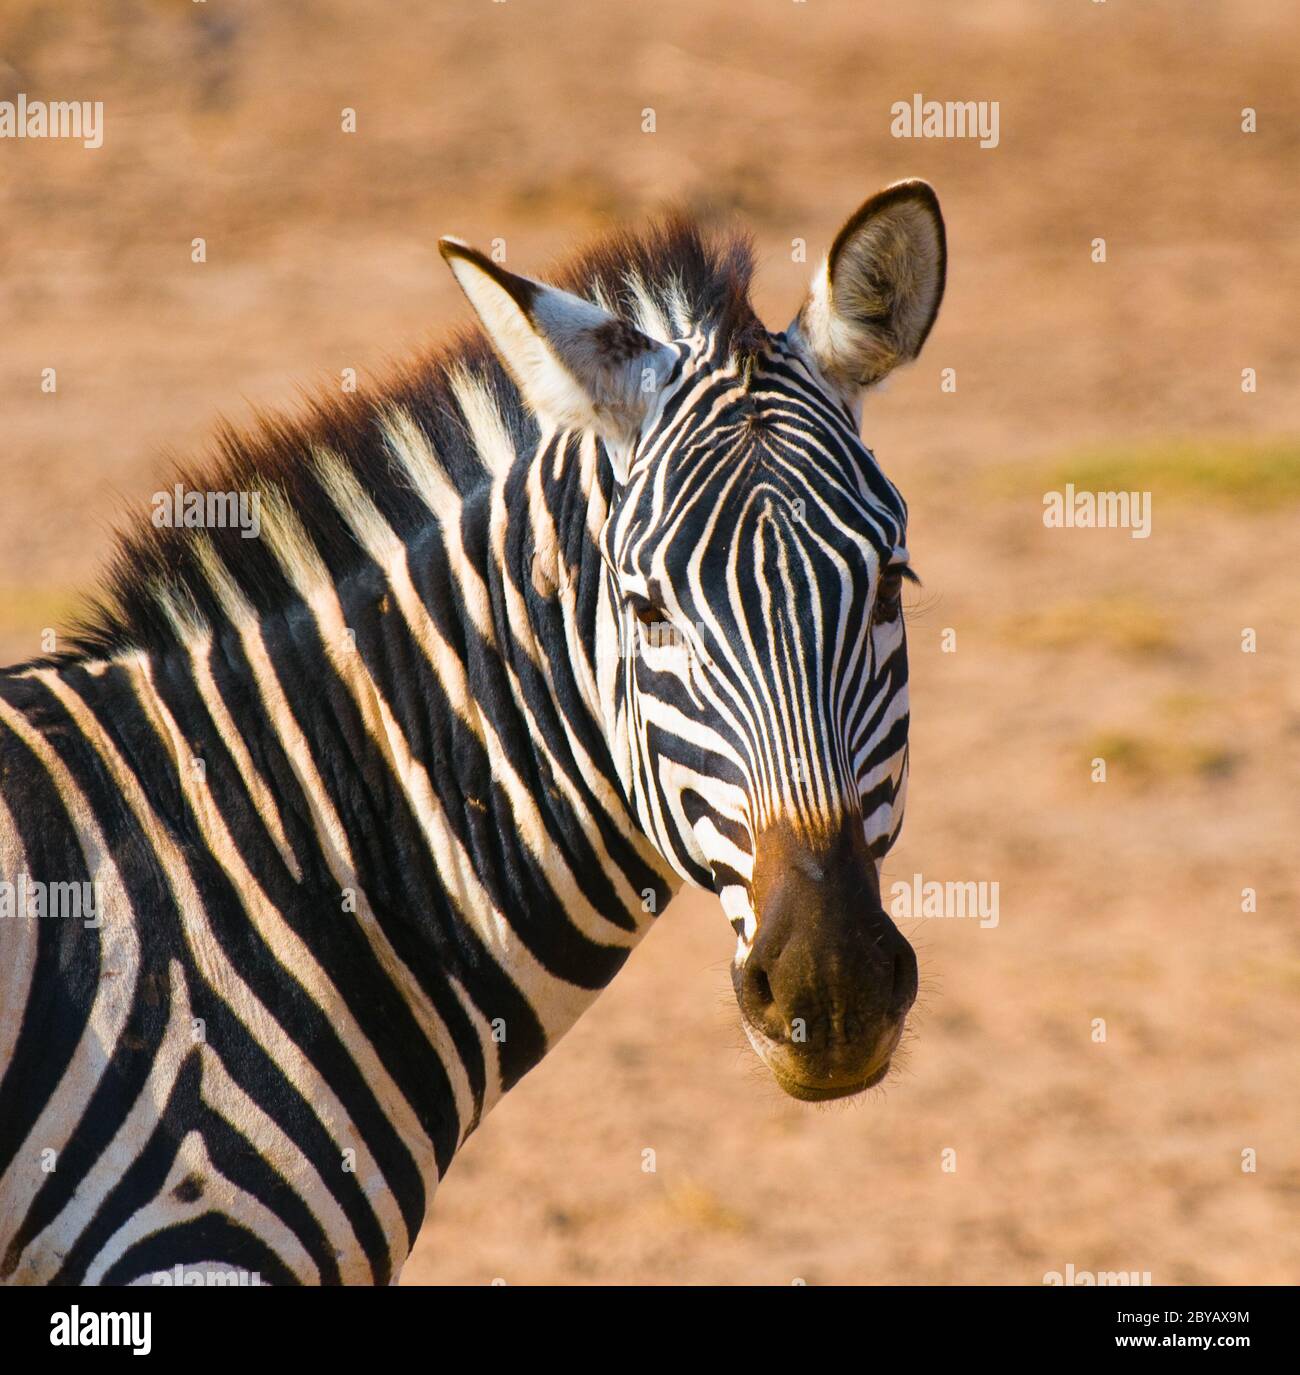 zebra's head Stock Photo